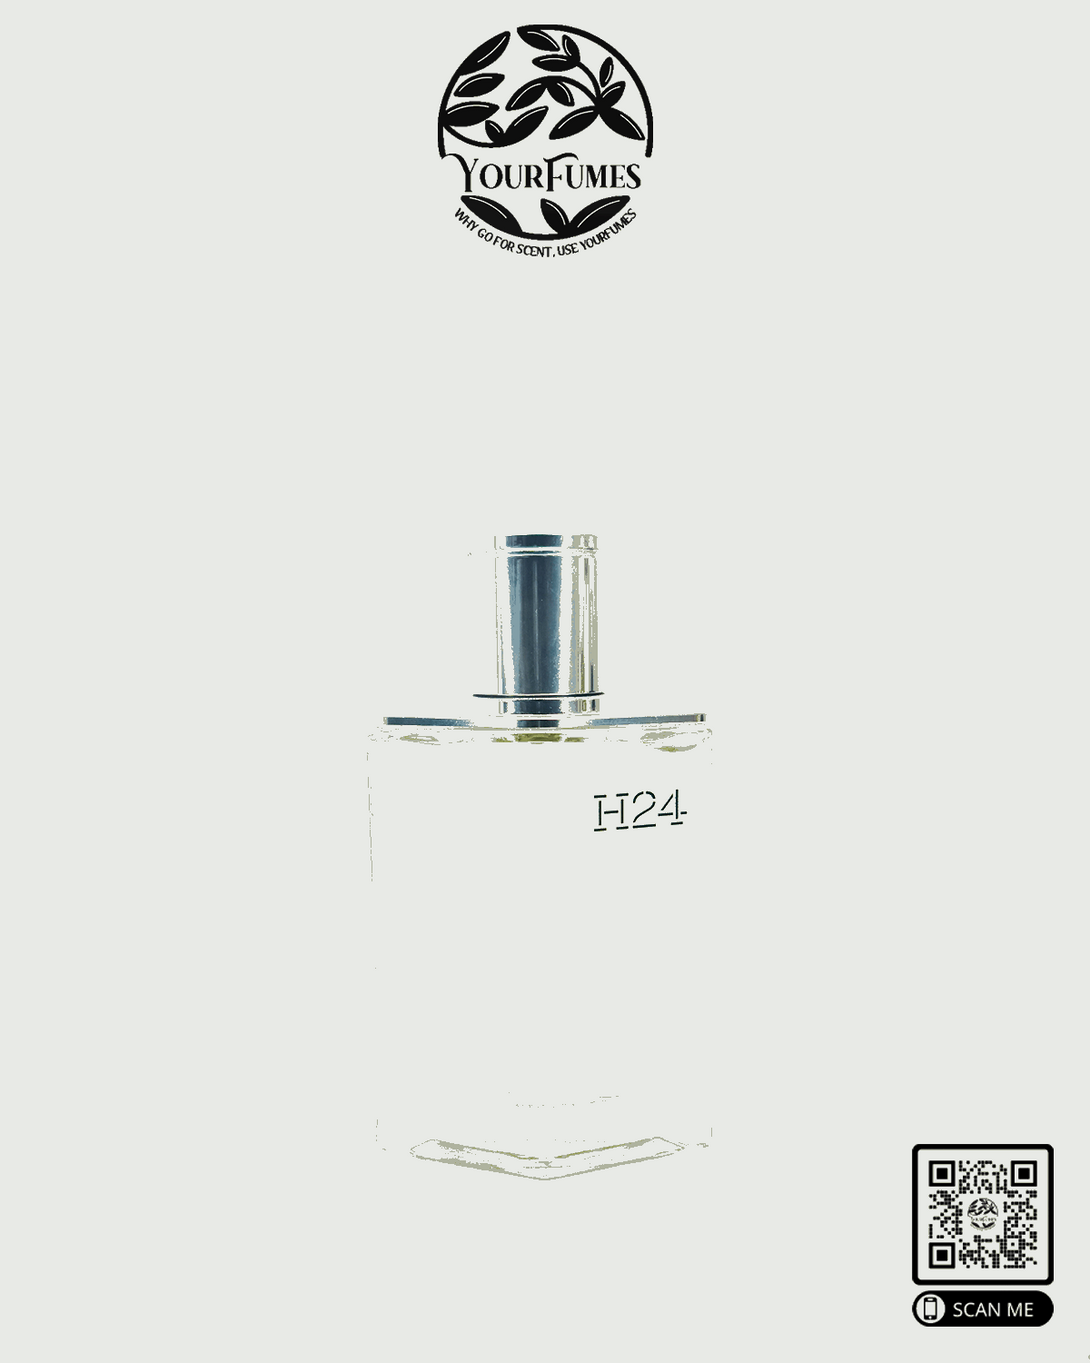 H24 Hermès - Yourfumes